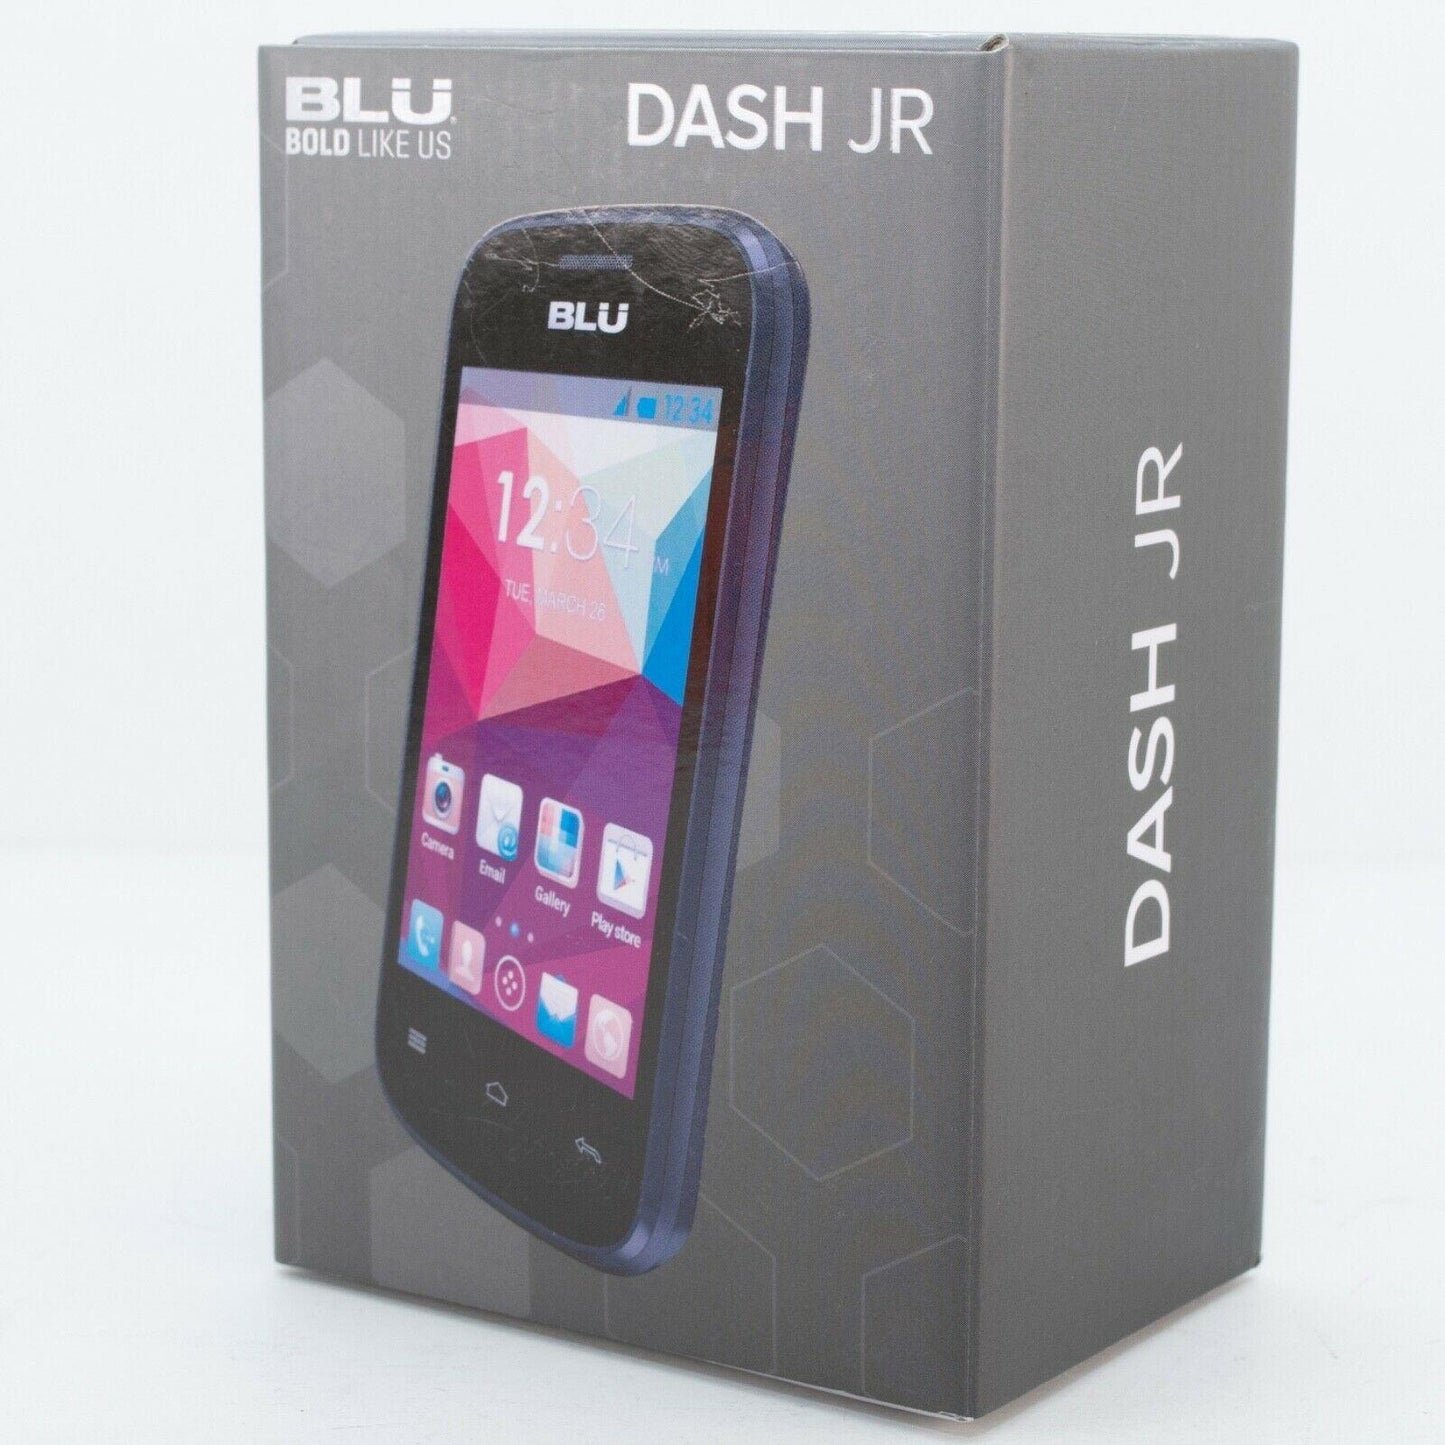 BLU Dash JR W D141w - Black (Unlocked) Smartphone - ipawnishop.com